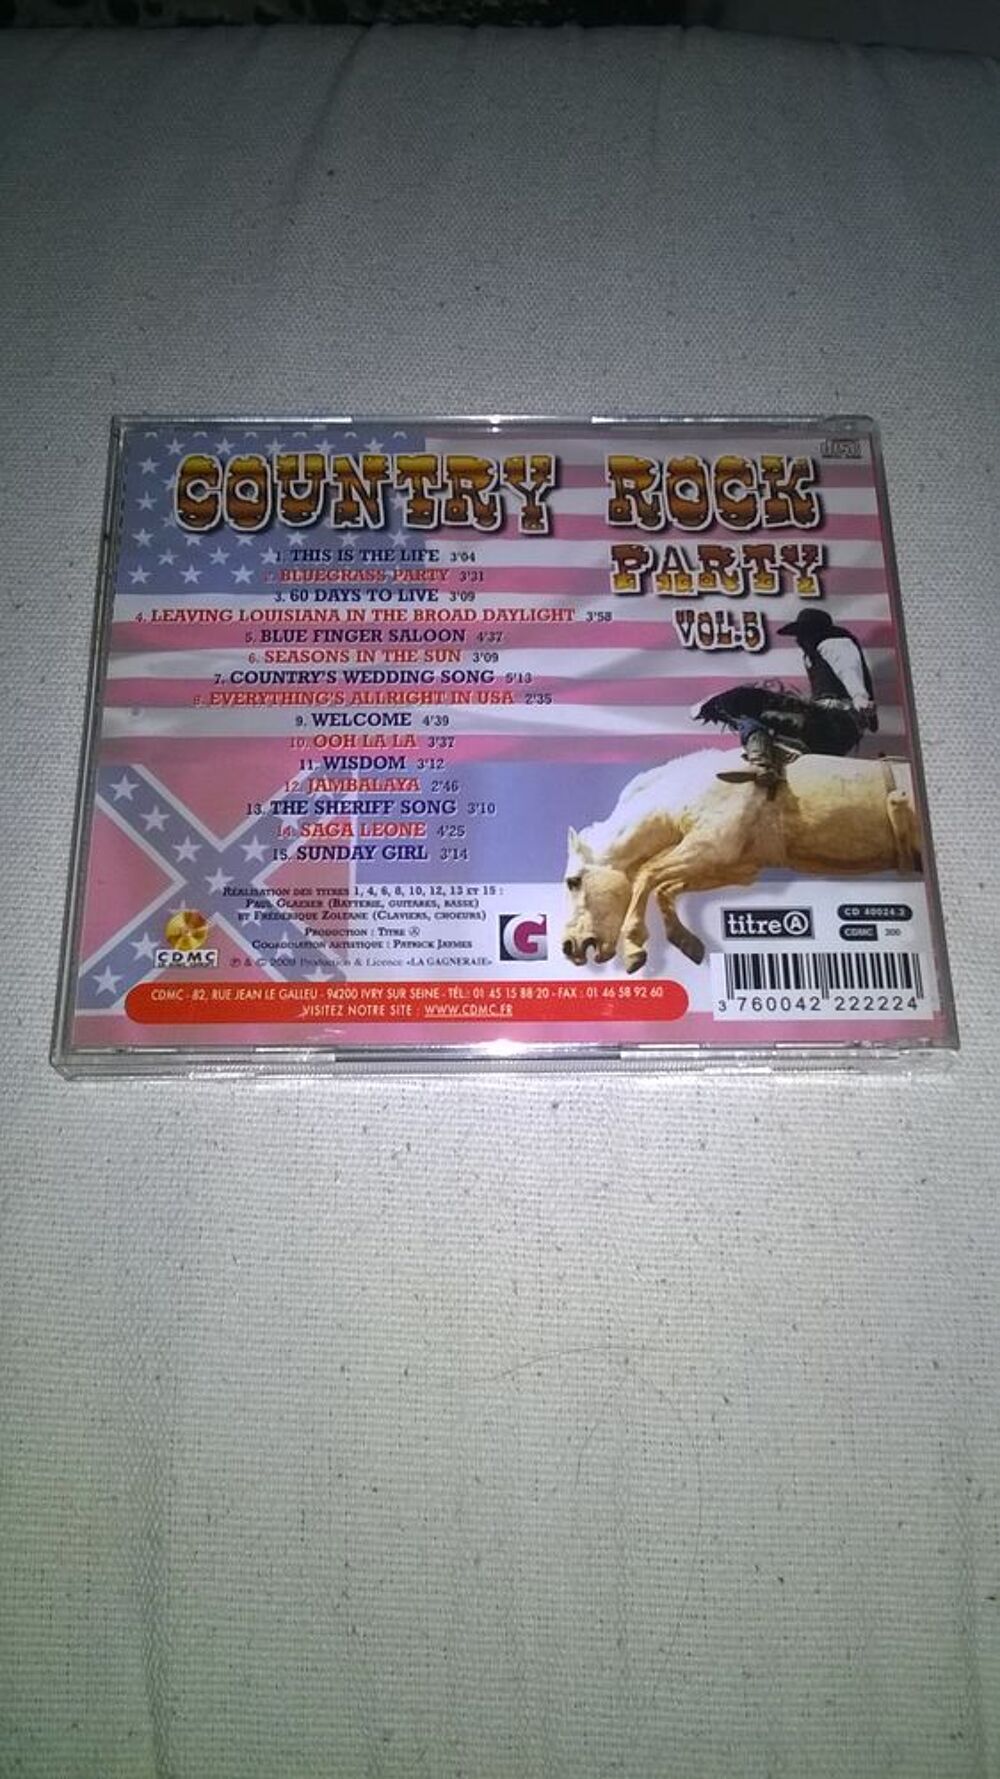 CD Country Rock Party
Vol. 5
2009
Excellent etat
This Is CD et vinyles